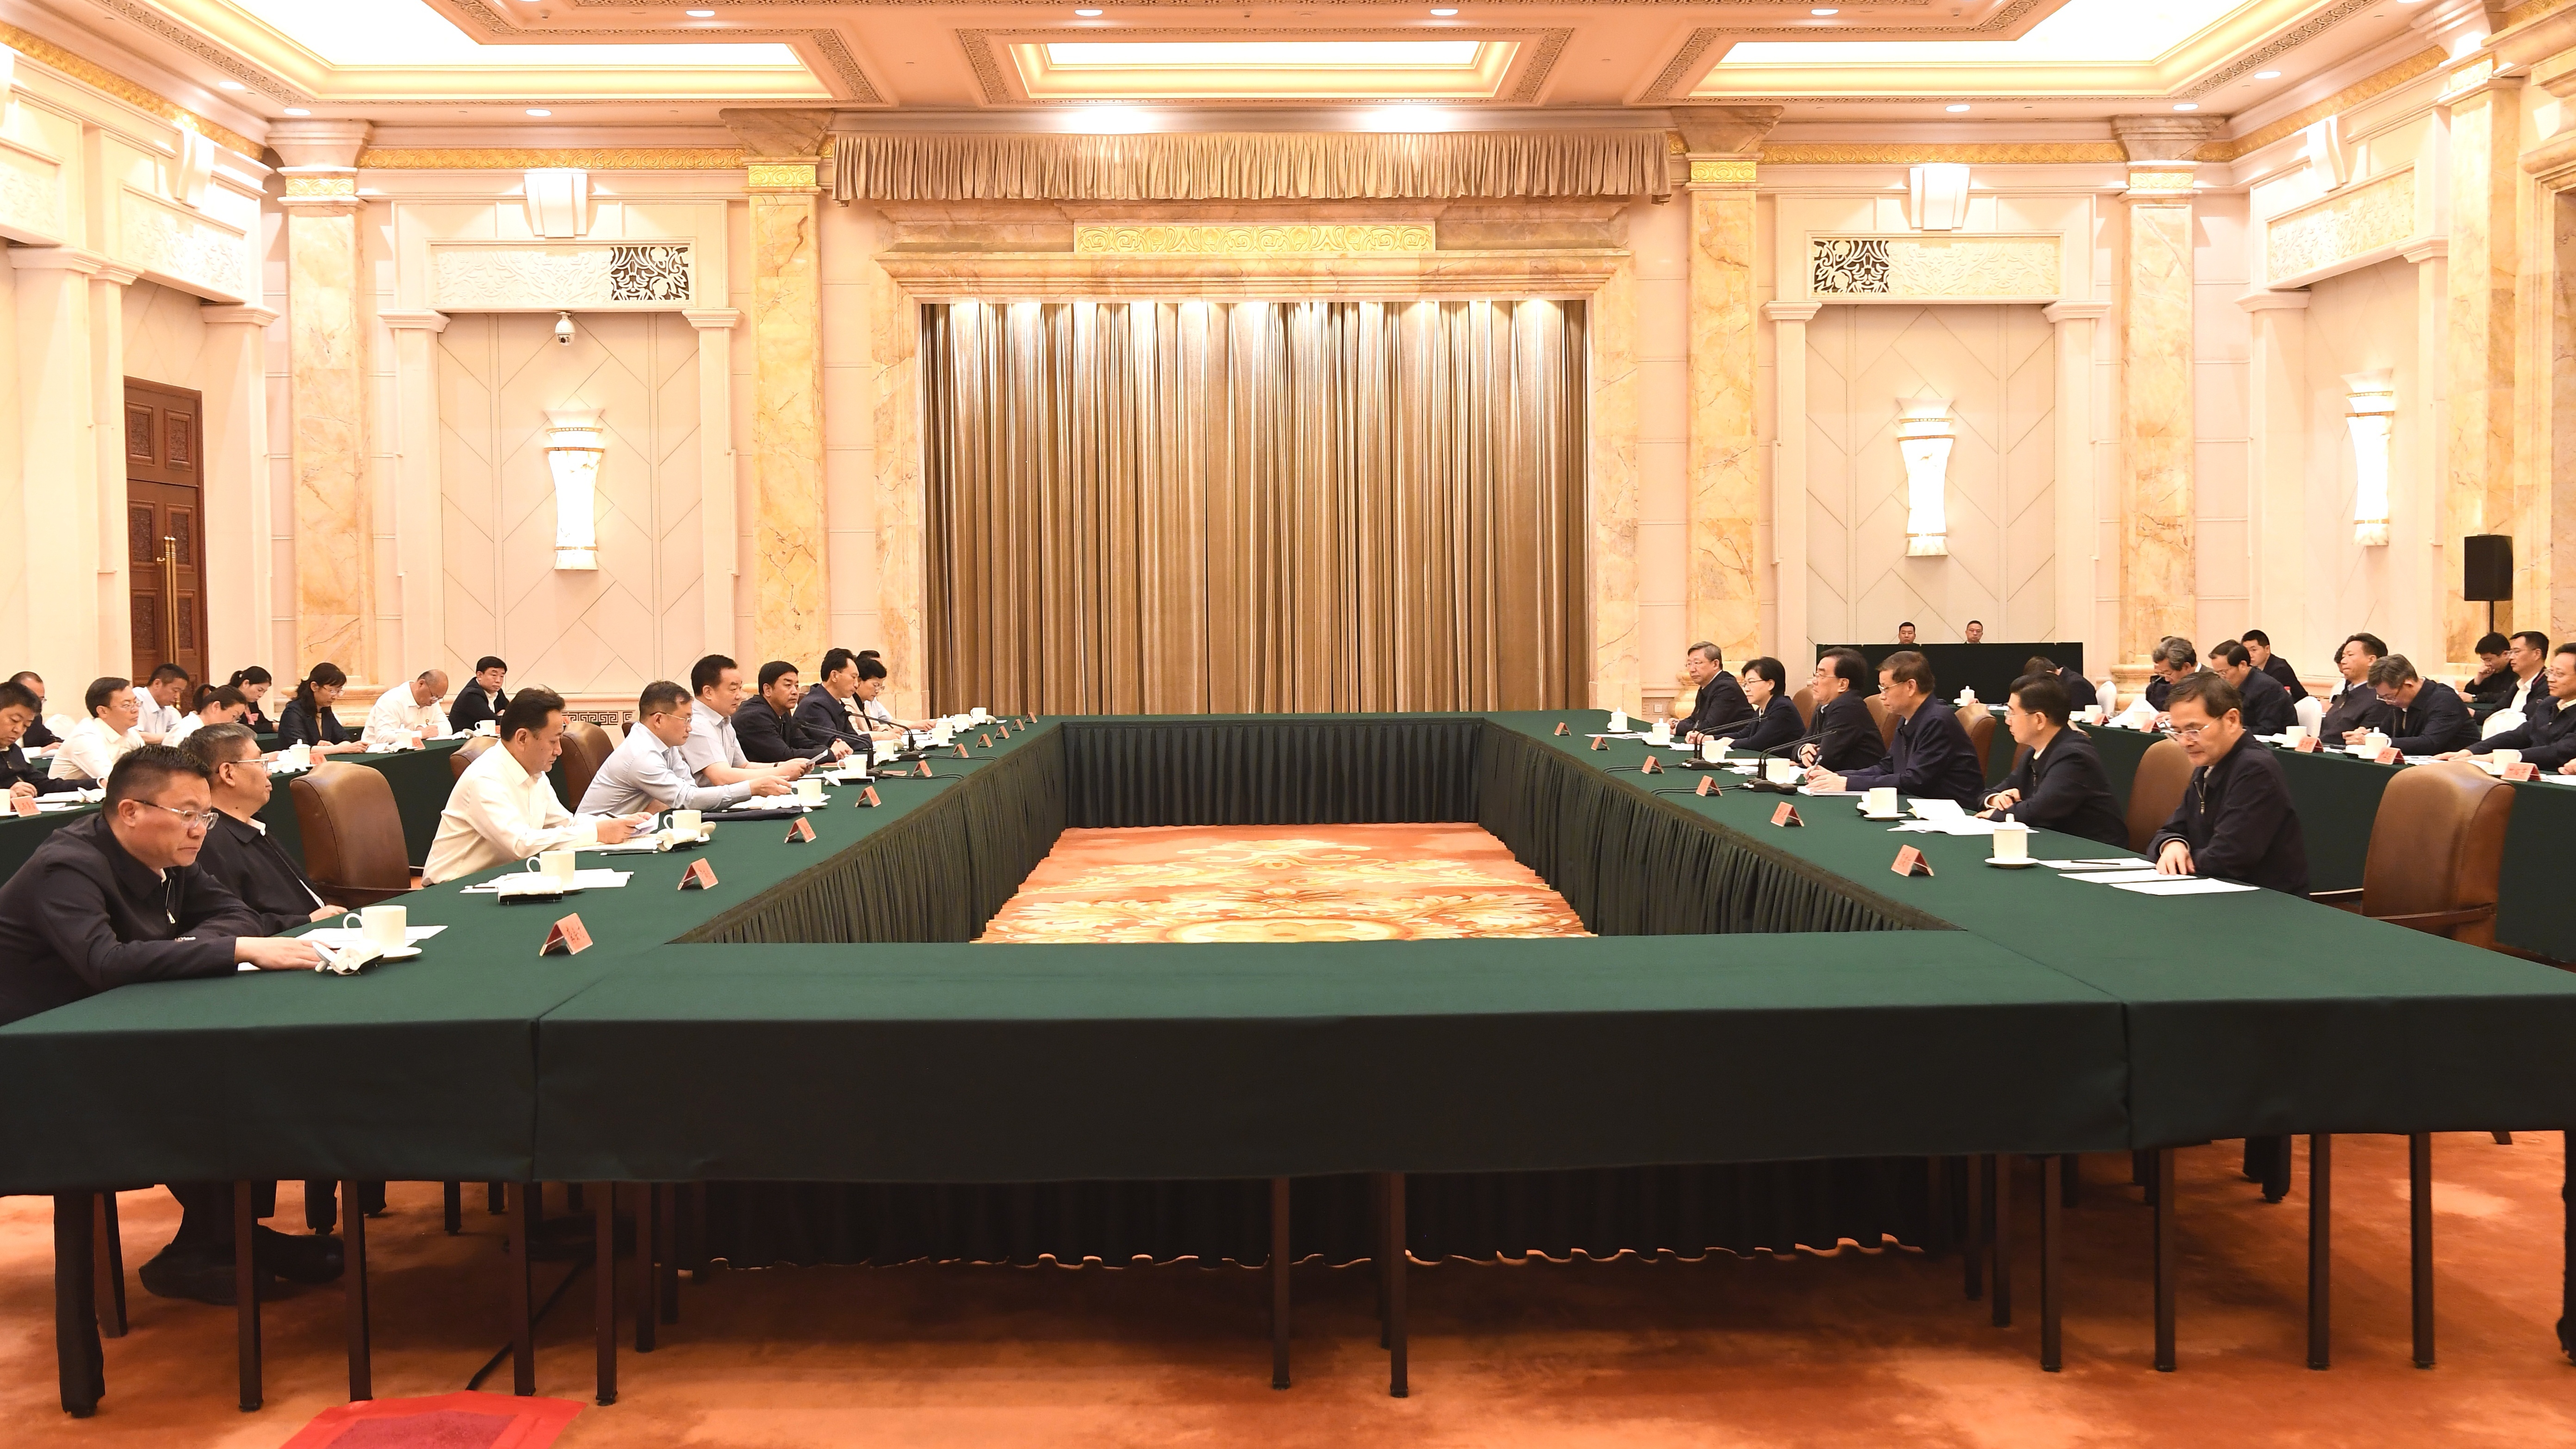 西藏自治區黨政代表團赴江蘇省學習考察 王君正信長星出席兩省區工作座談會并講話